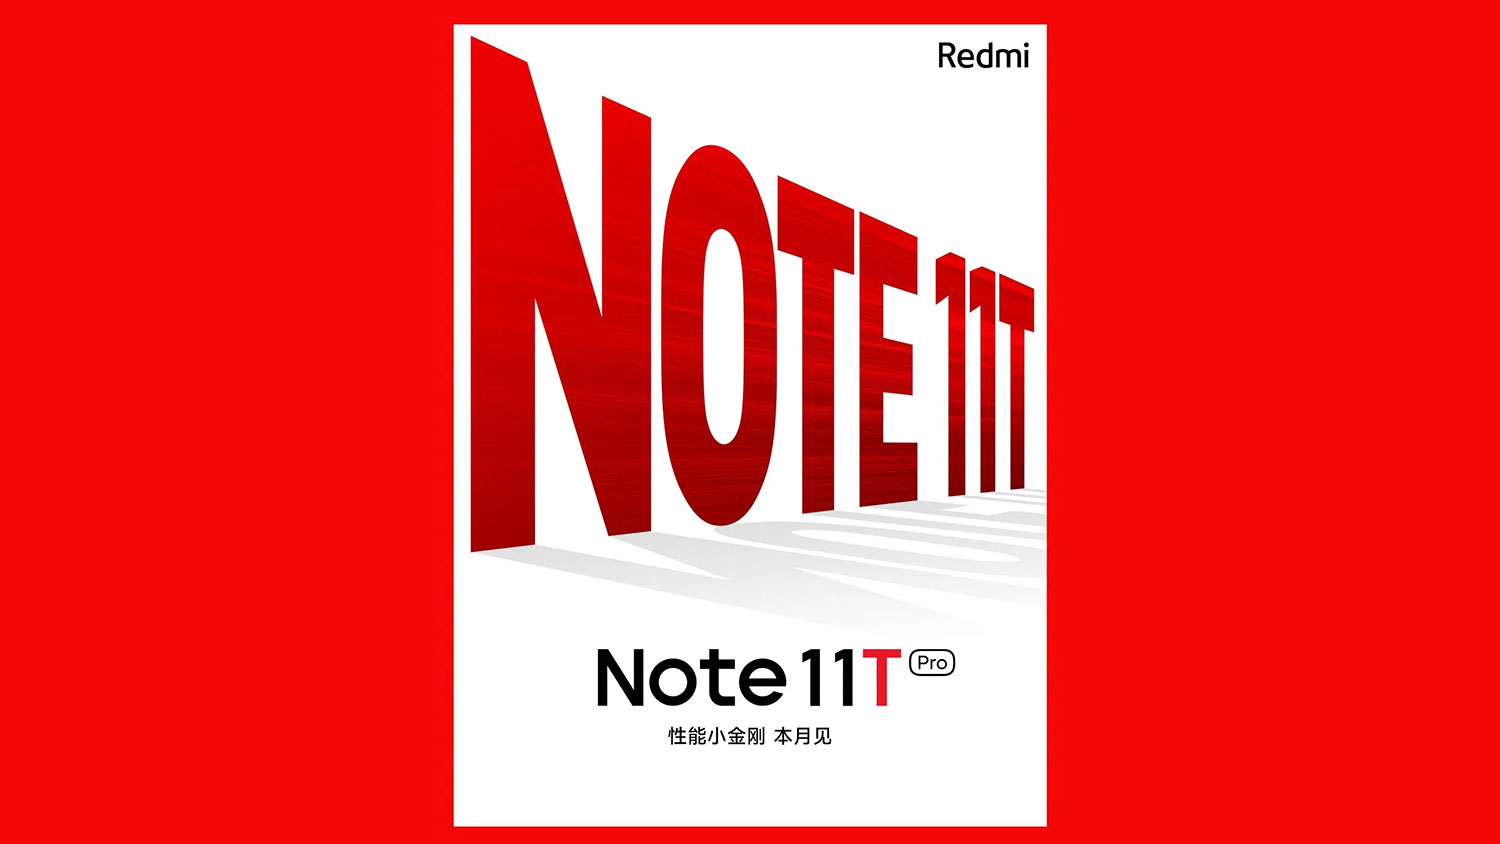 شیائومی Redmi Note 11T و Note 11T Pro به زودی معرفی می شوند